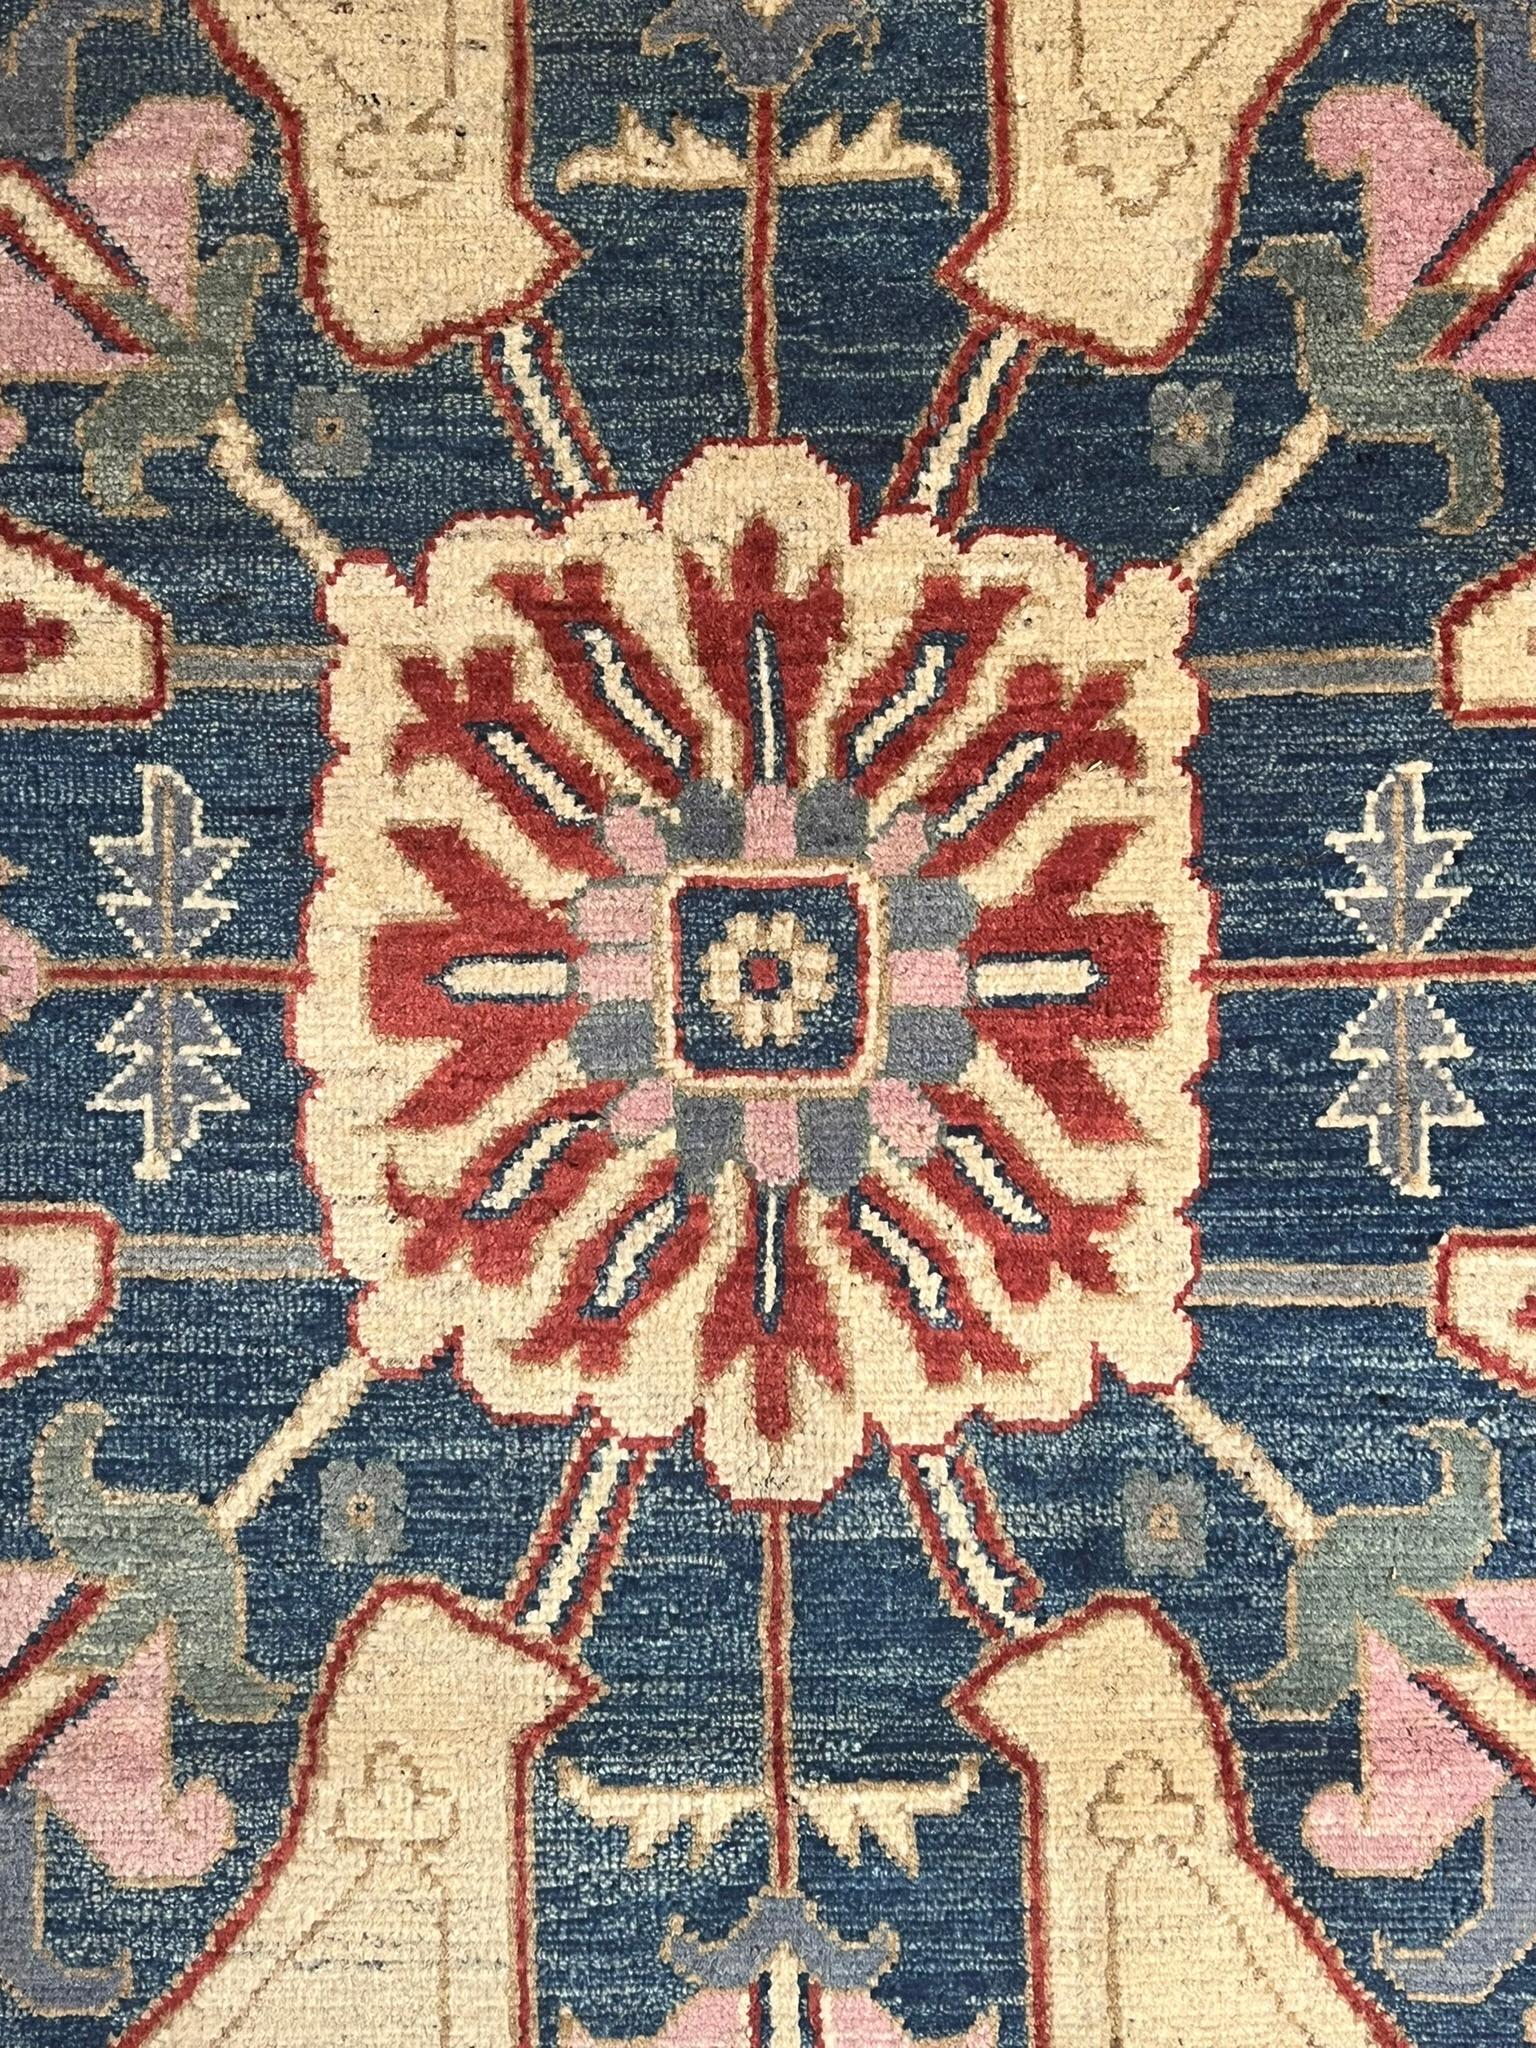 Dieses interessante Artefakt stammt aus der afghanischen Stadt Ghazni, der Hauptstadt der gleichnamigen Provinz. Hier werden hochwertige Teppiche mit Mustern hergestellt, die von klassischen persischen Teppichen inspiriert sind. Unser Teppich